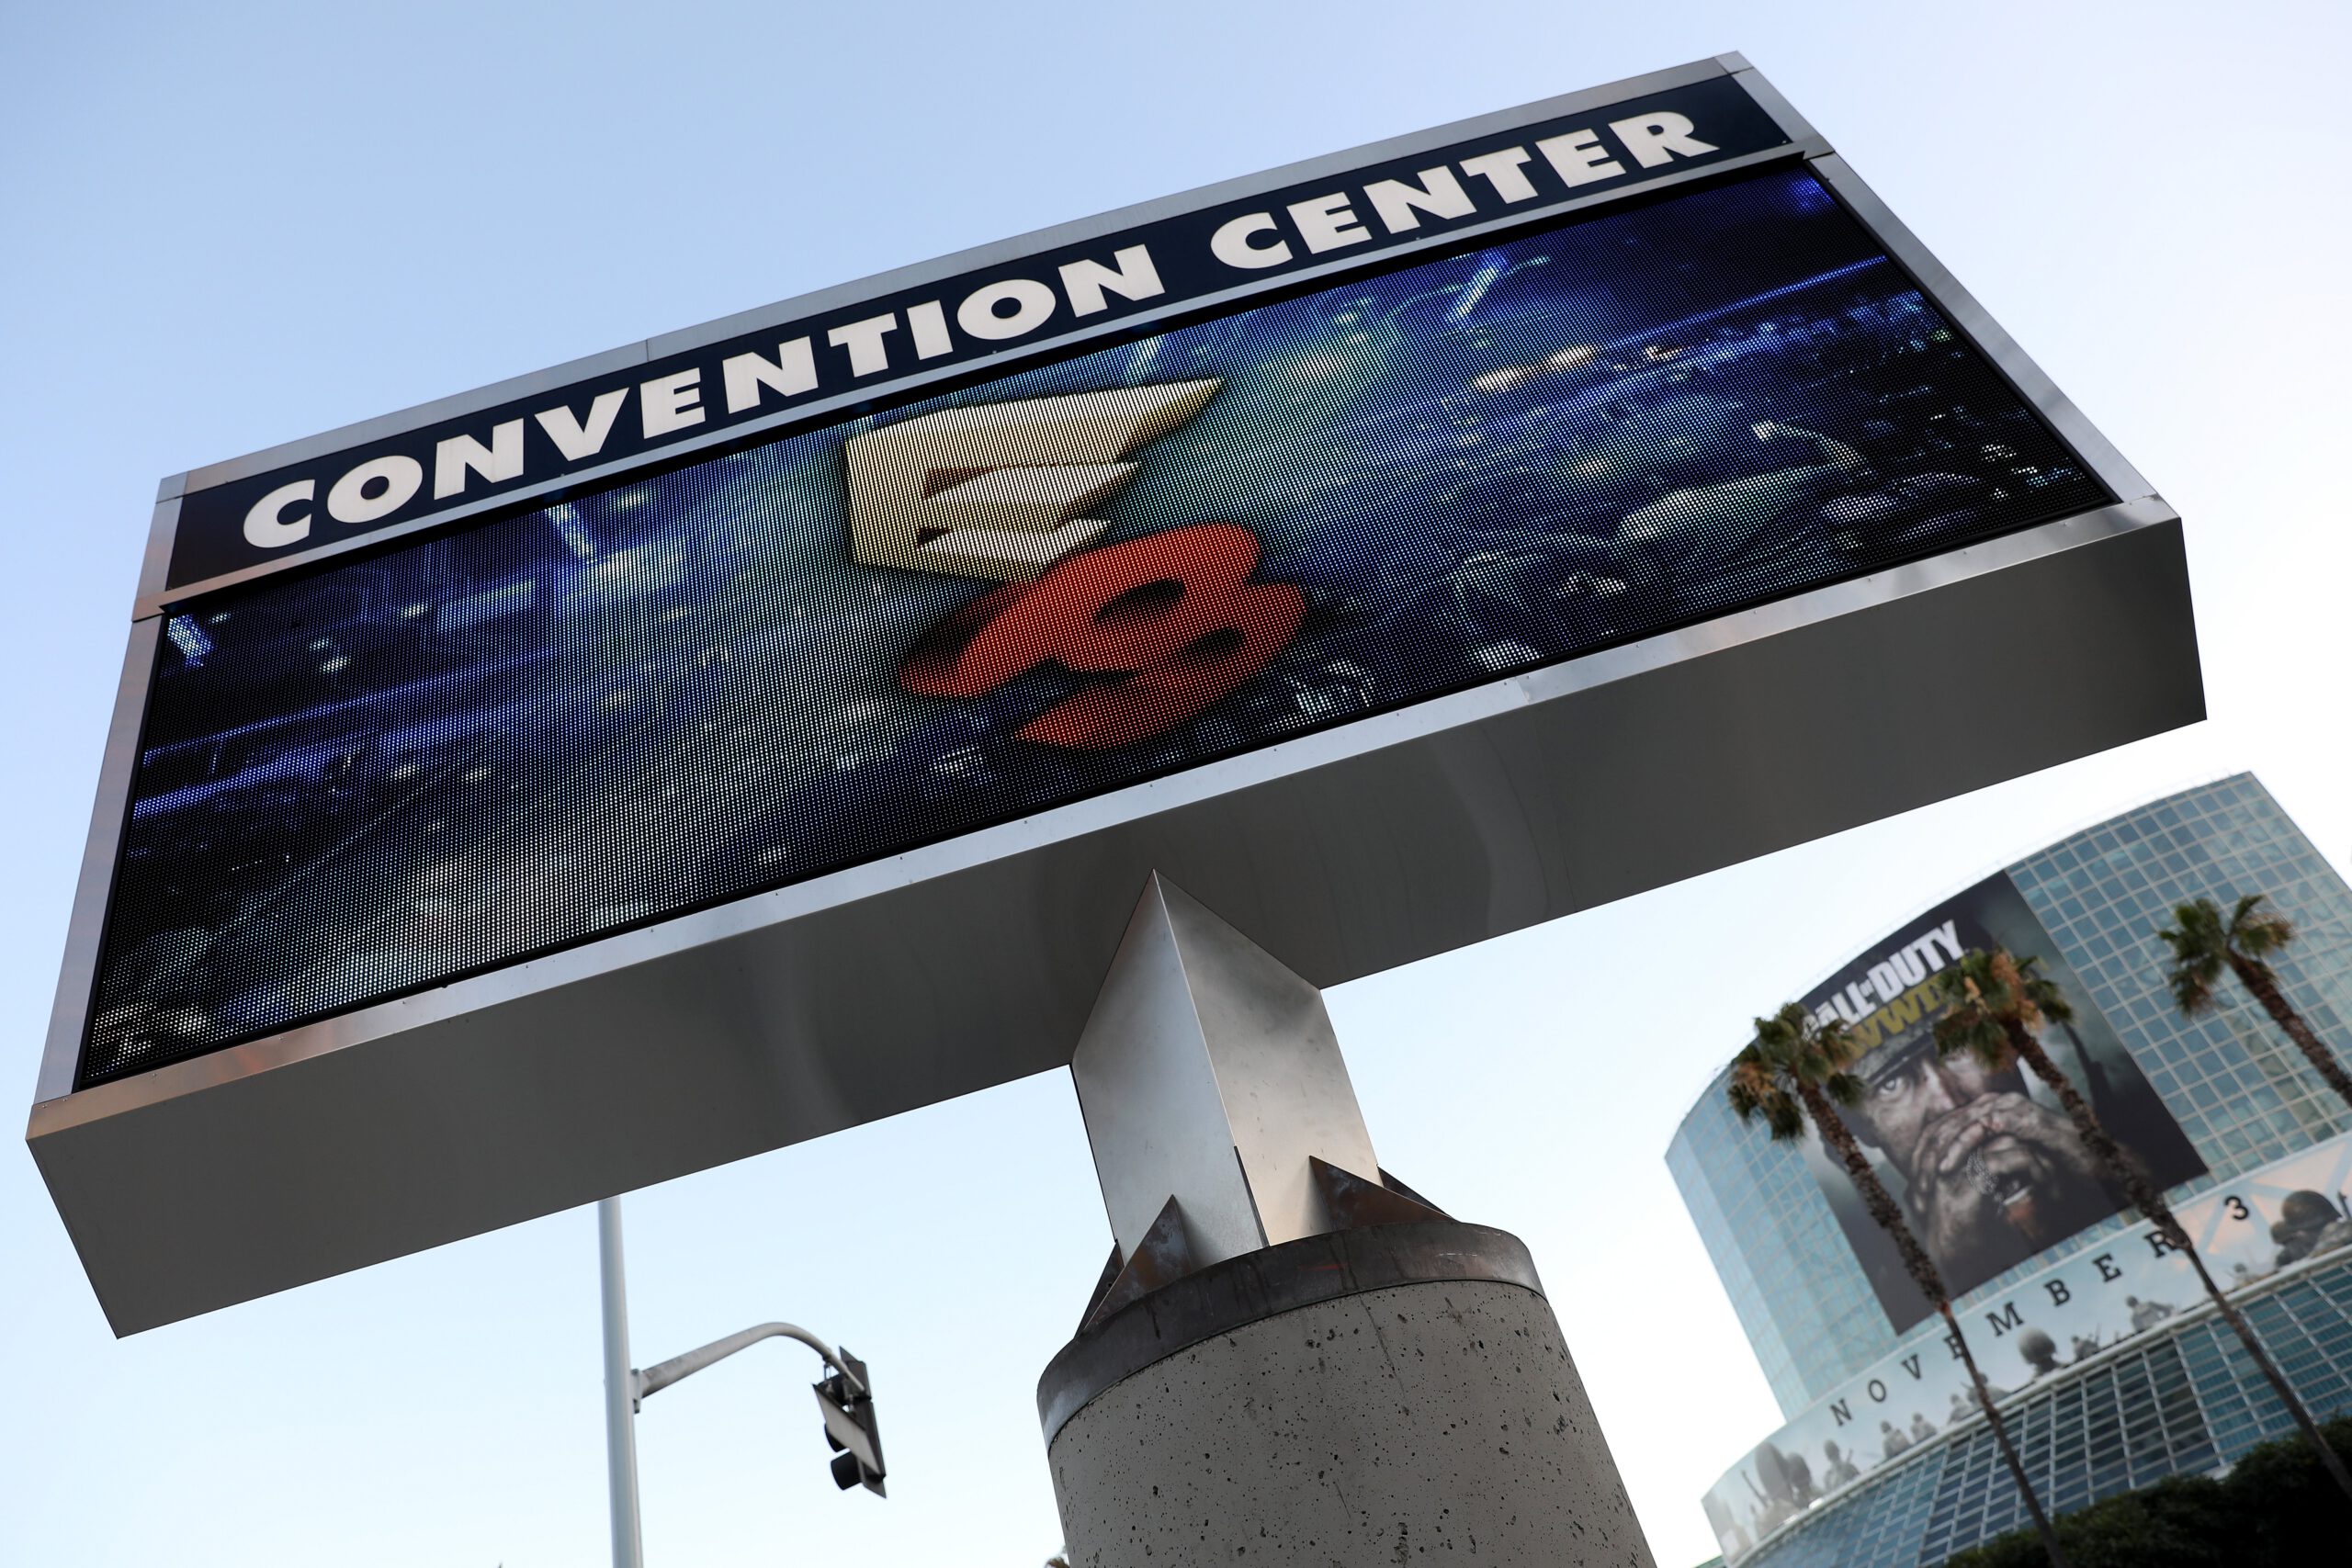 E3 event